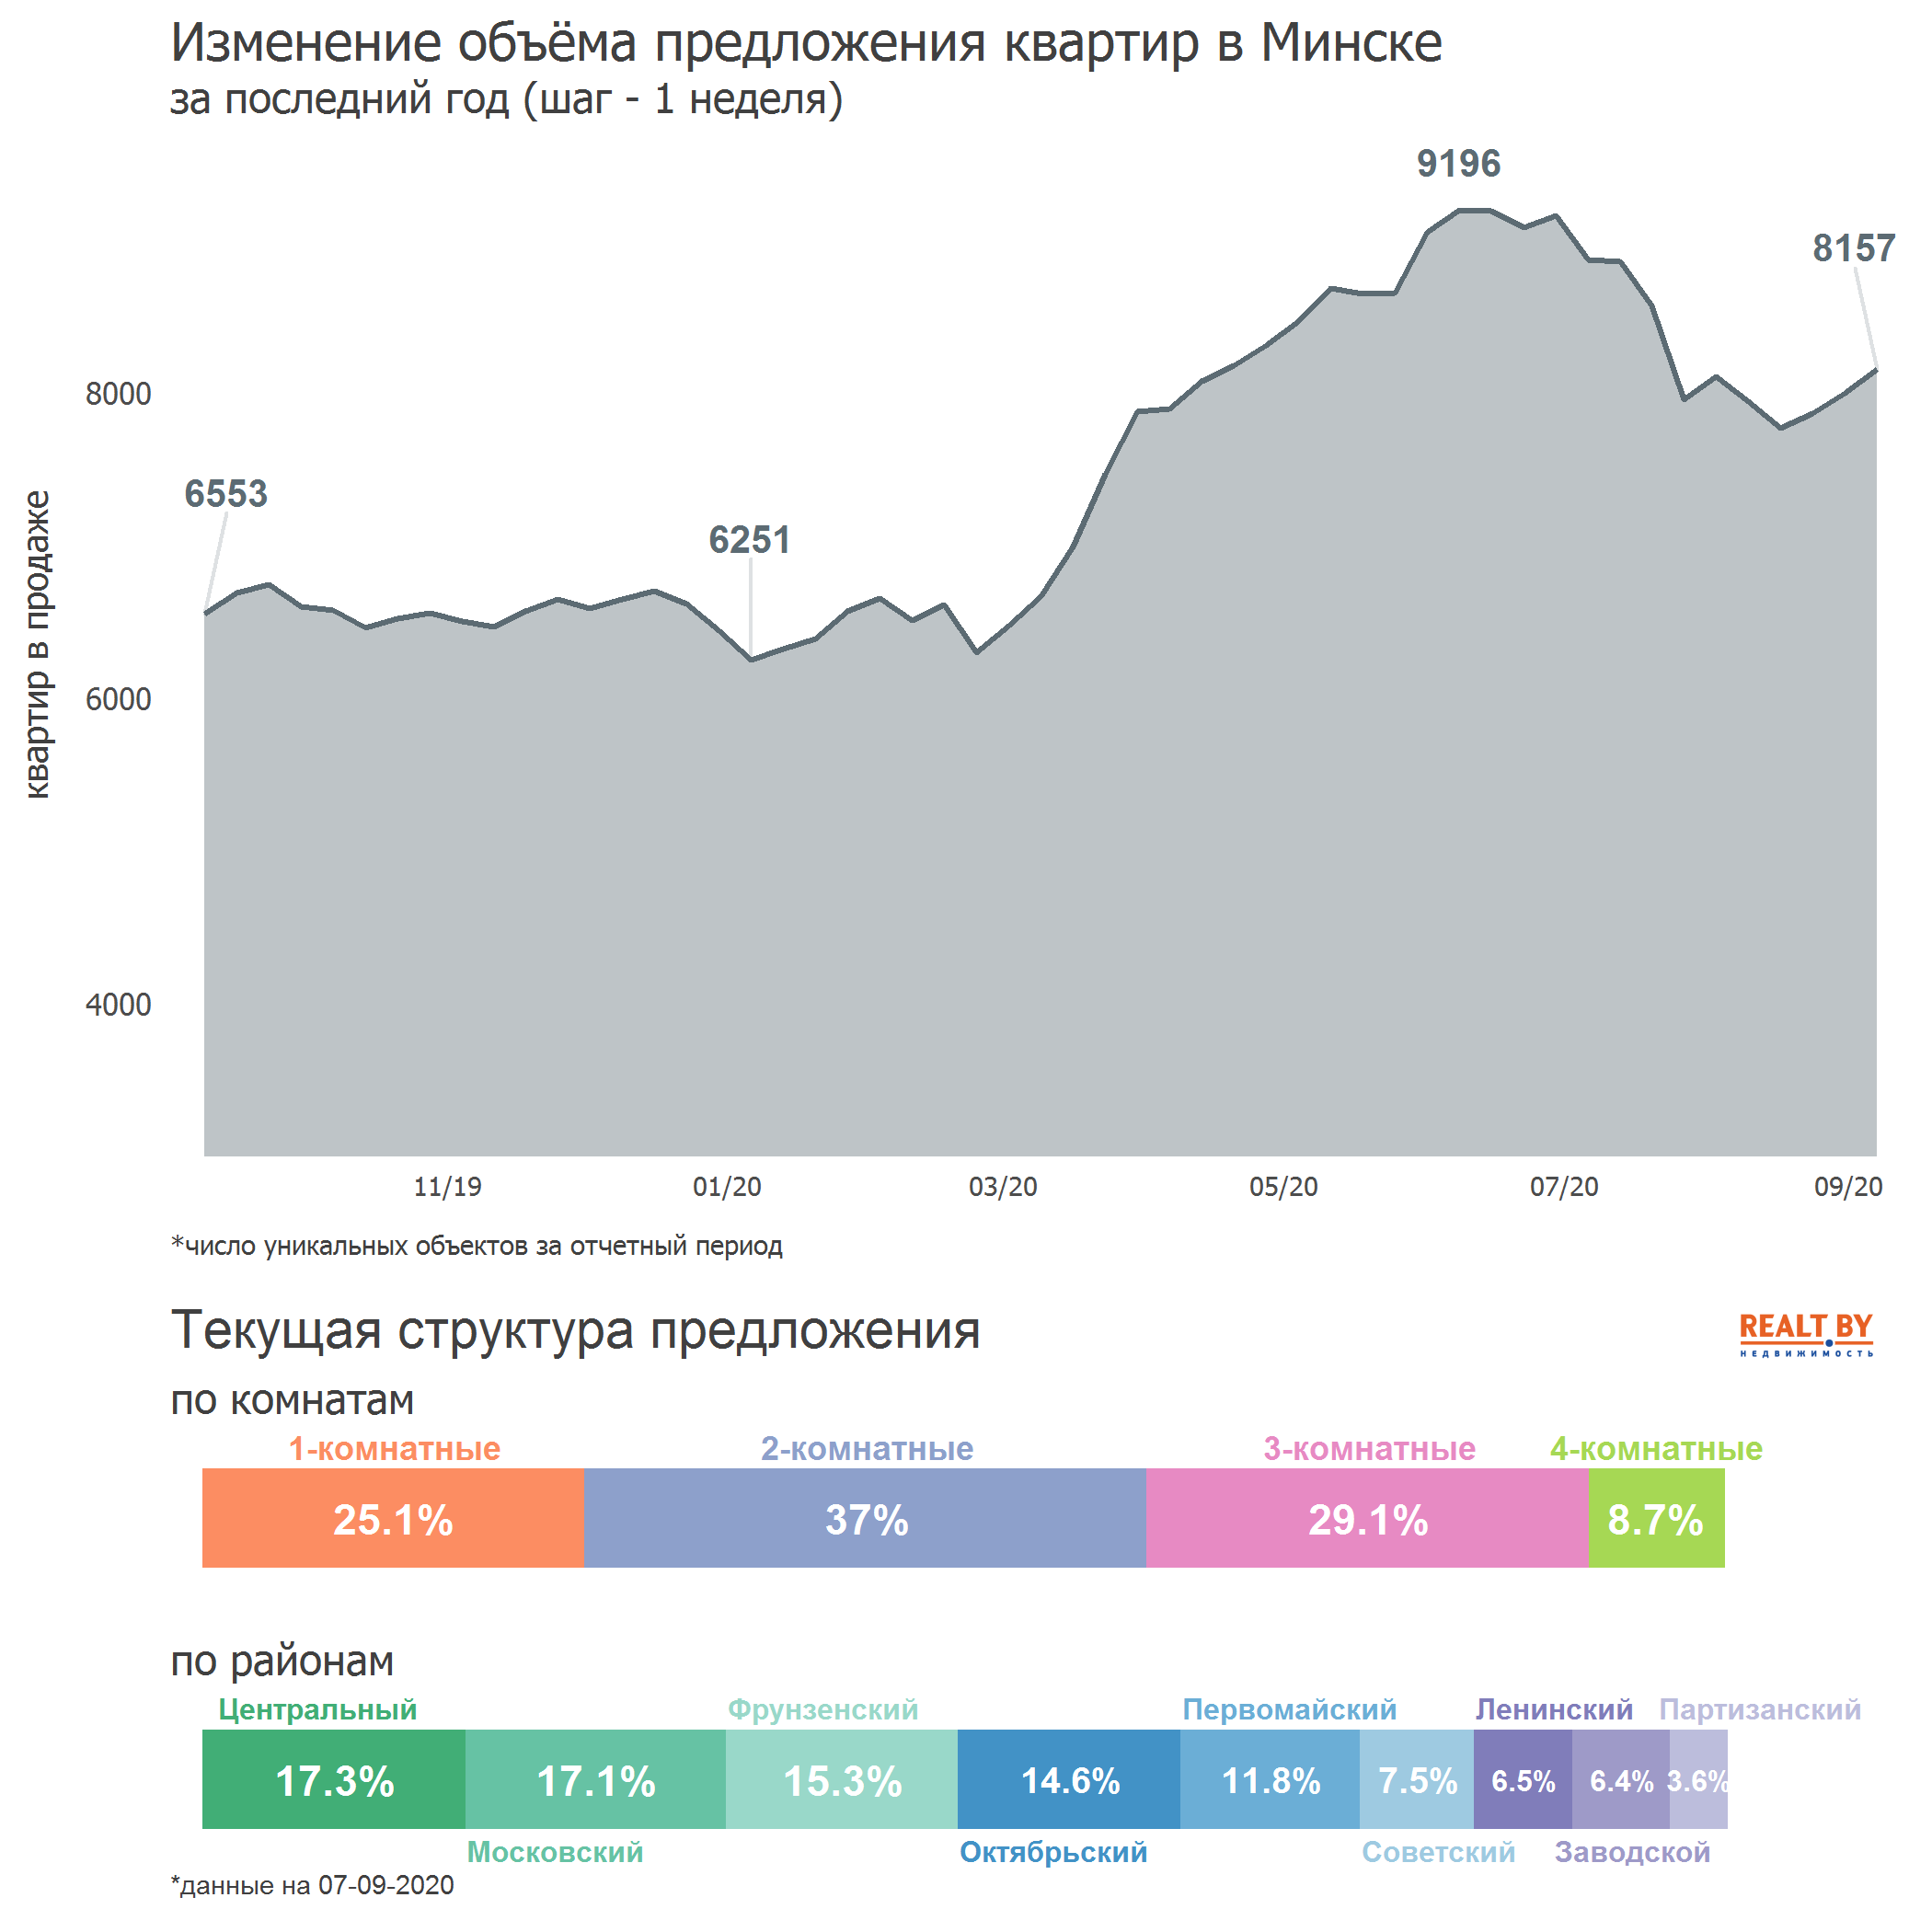 Мониторинг цен предложения квартир в Минске за 31 августа — 7 сентября 2020 года